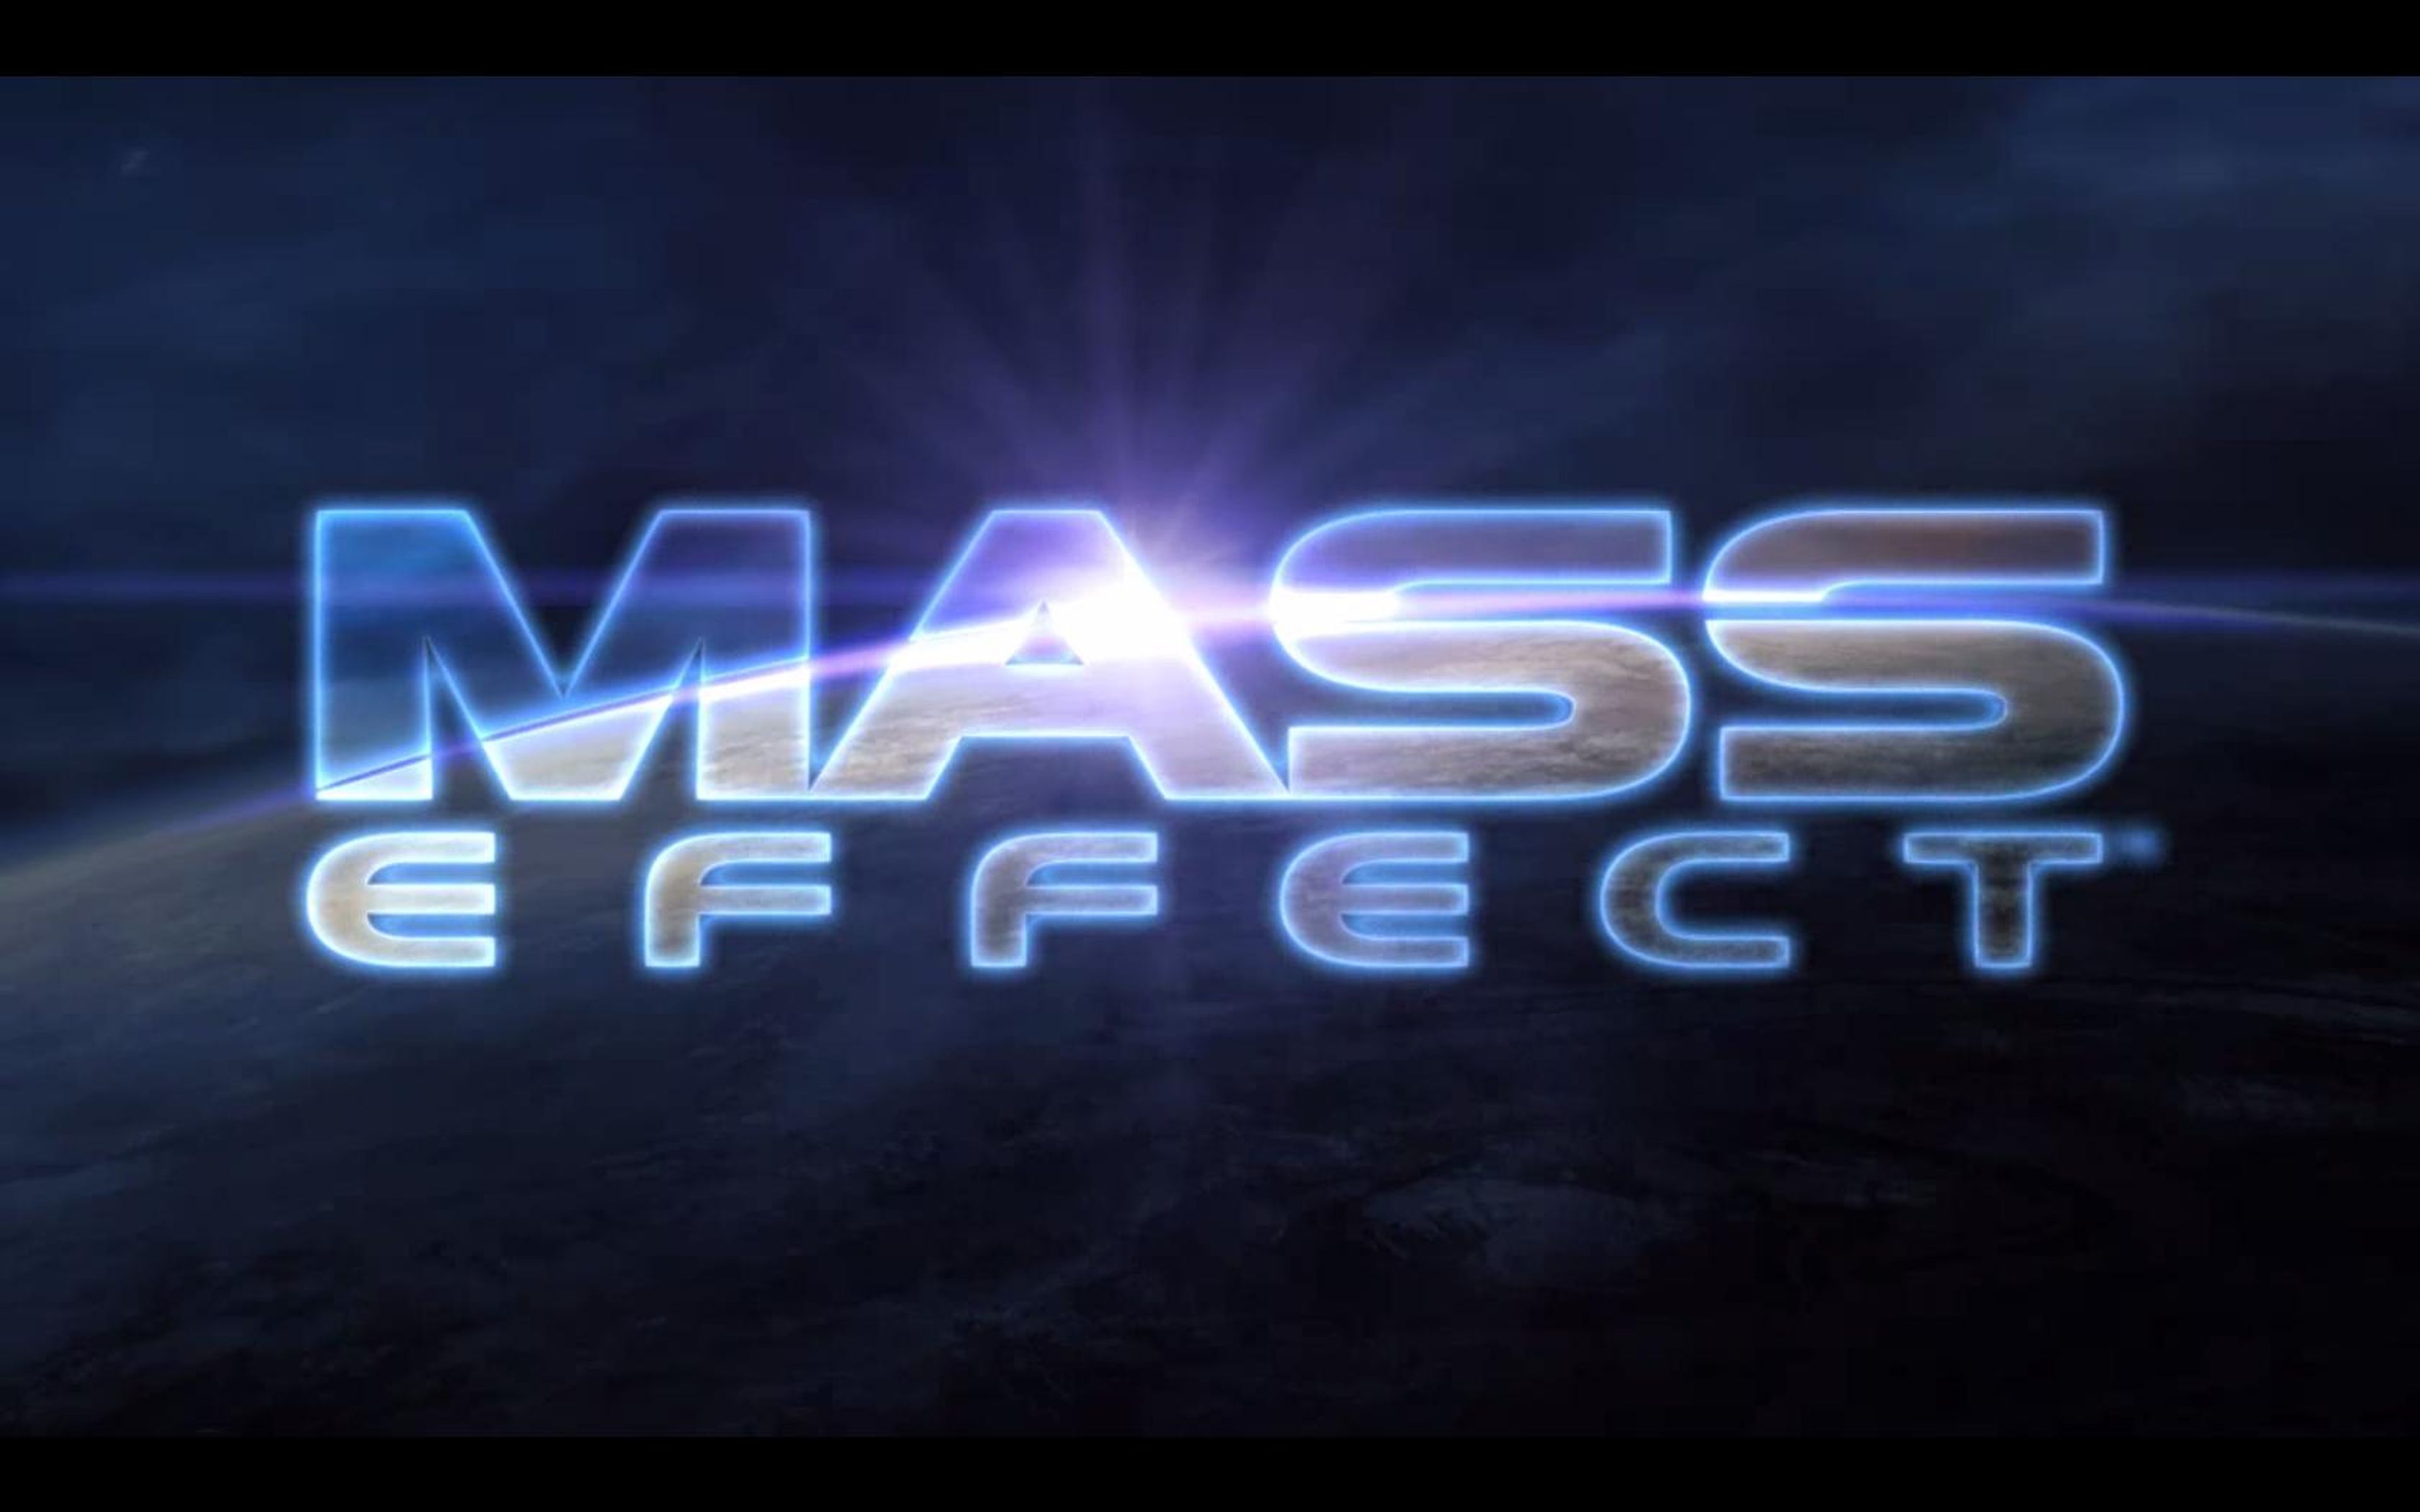 Universos de ficción: Mass Effect